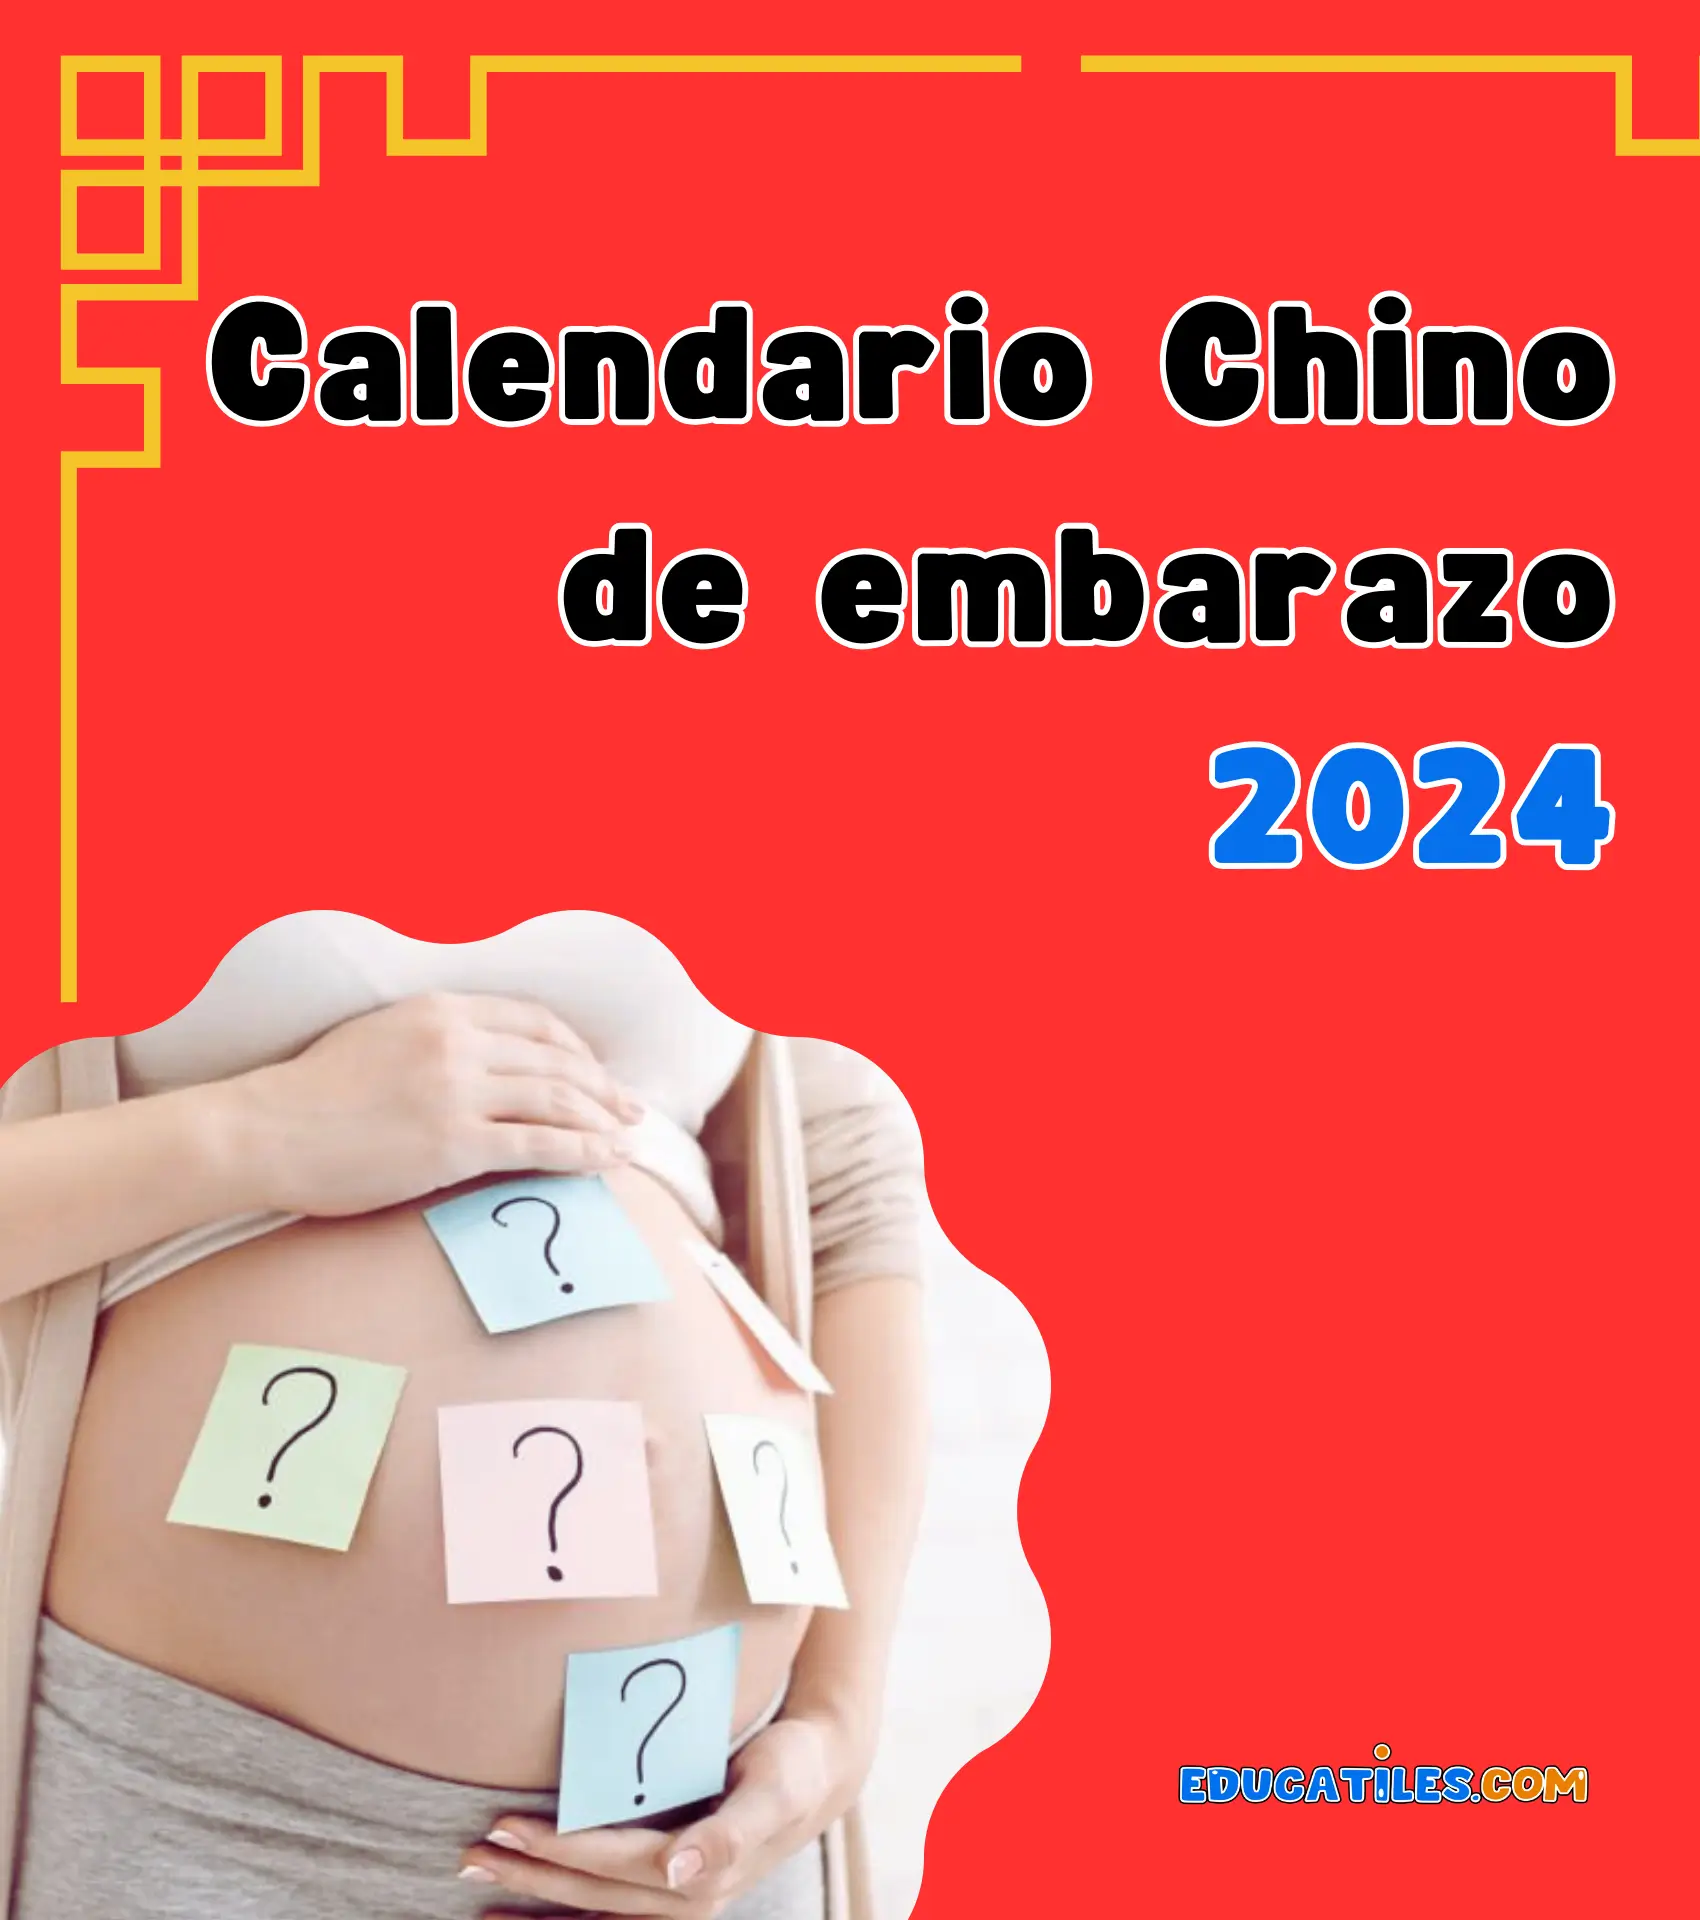 Calendario chino de embarazo 2024 Cuentos en español, Materiales educativos, Historias cortas